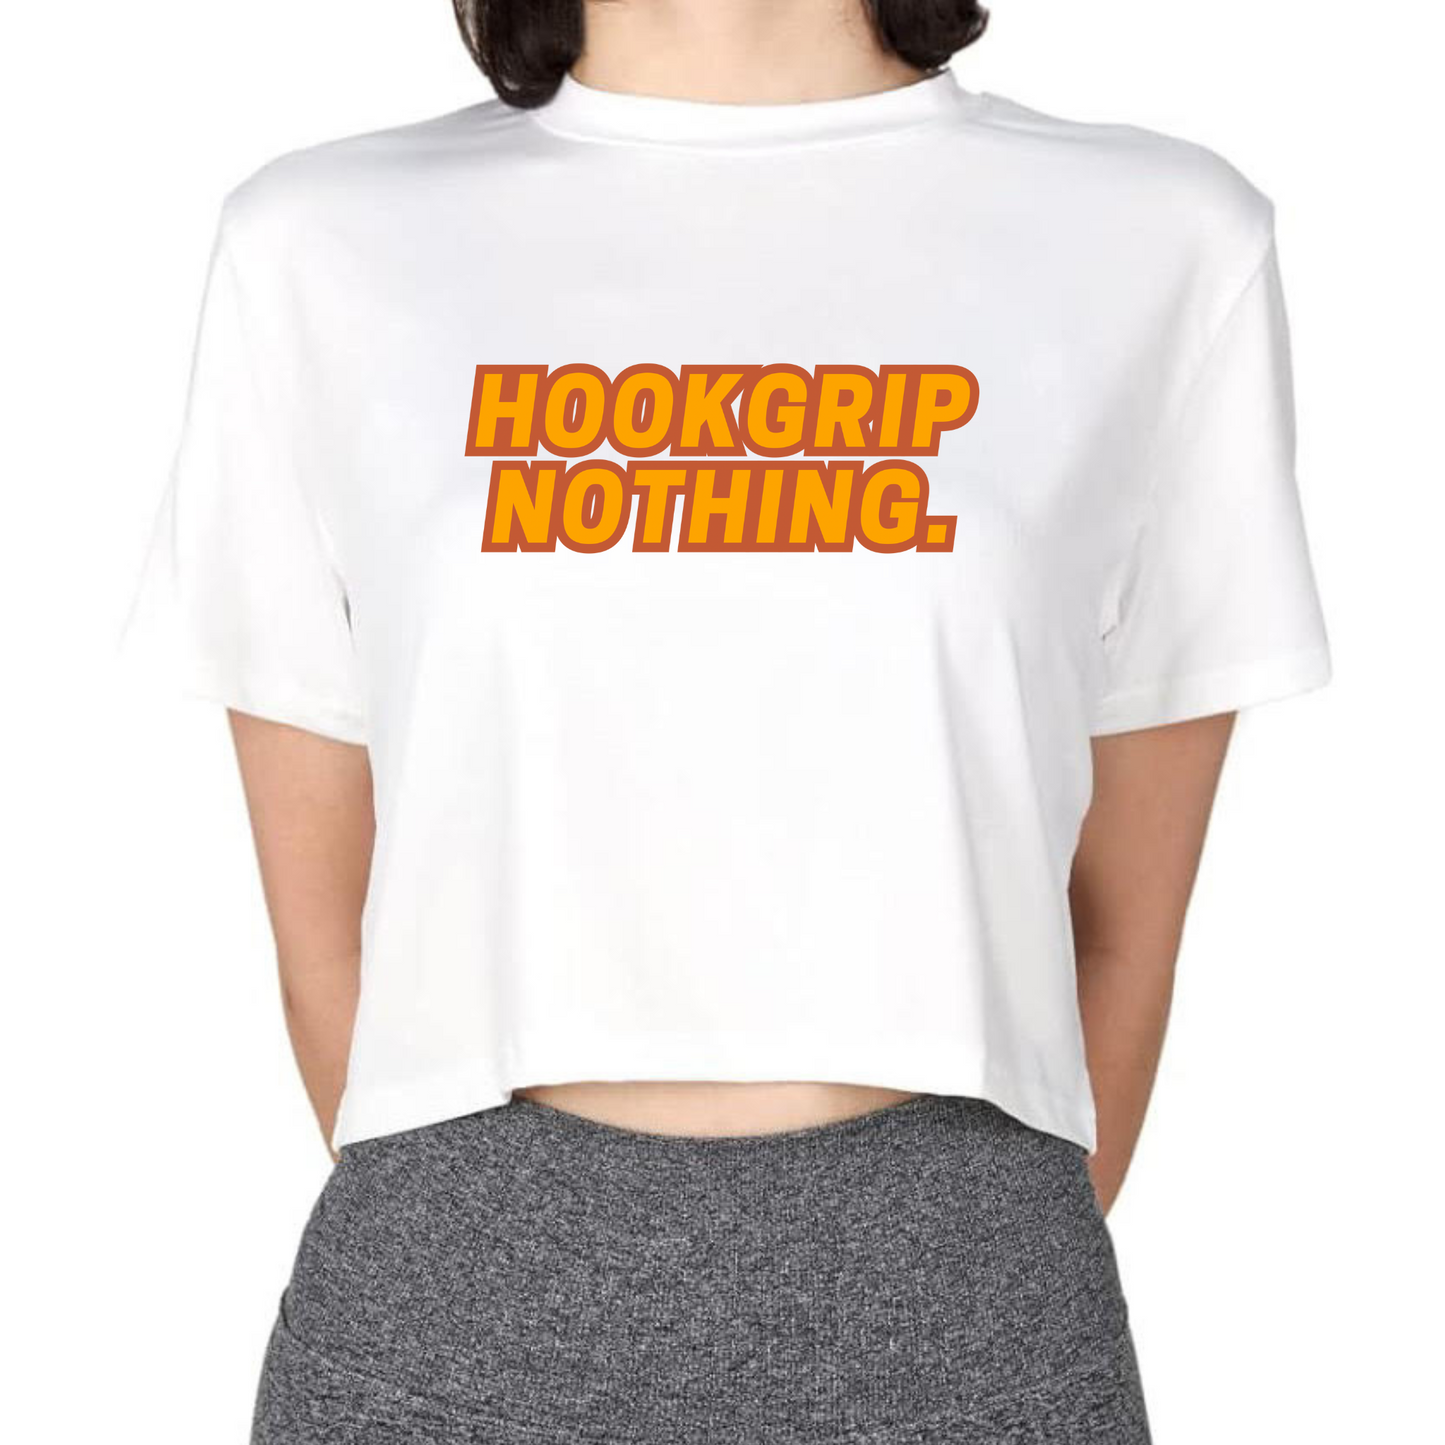 Hookgrip Crop Top